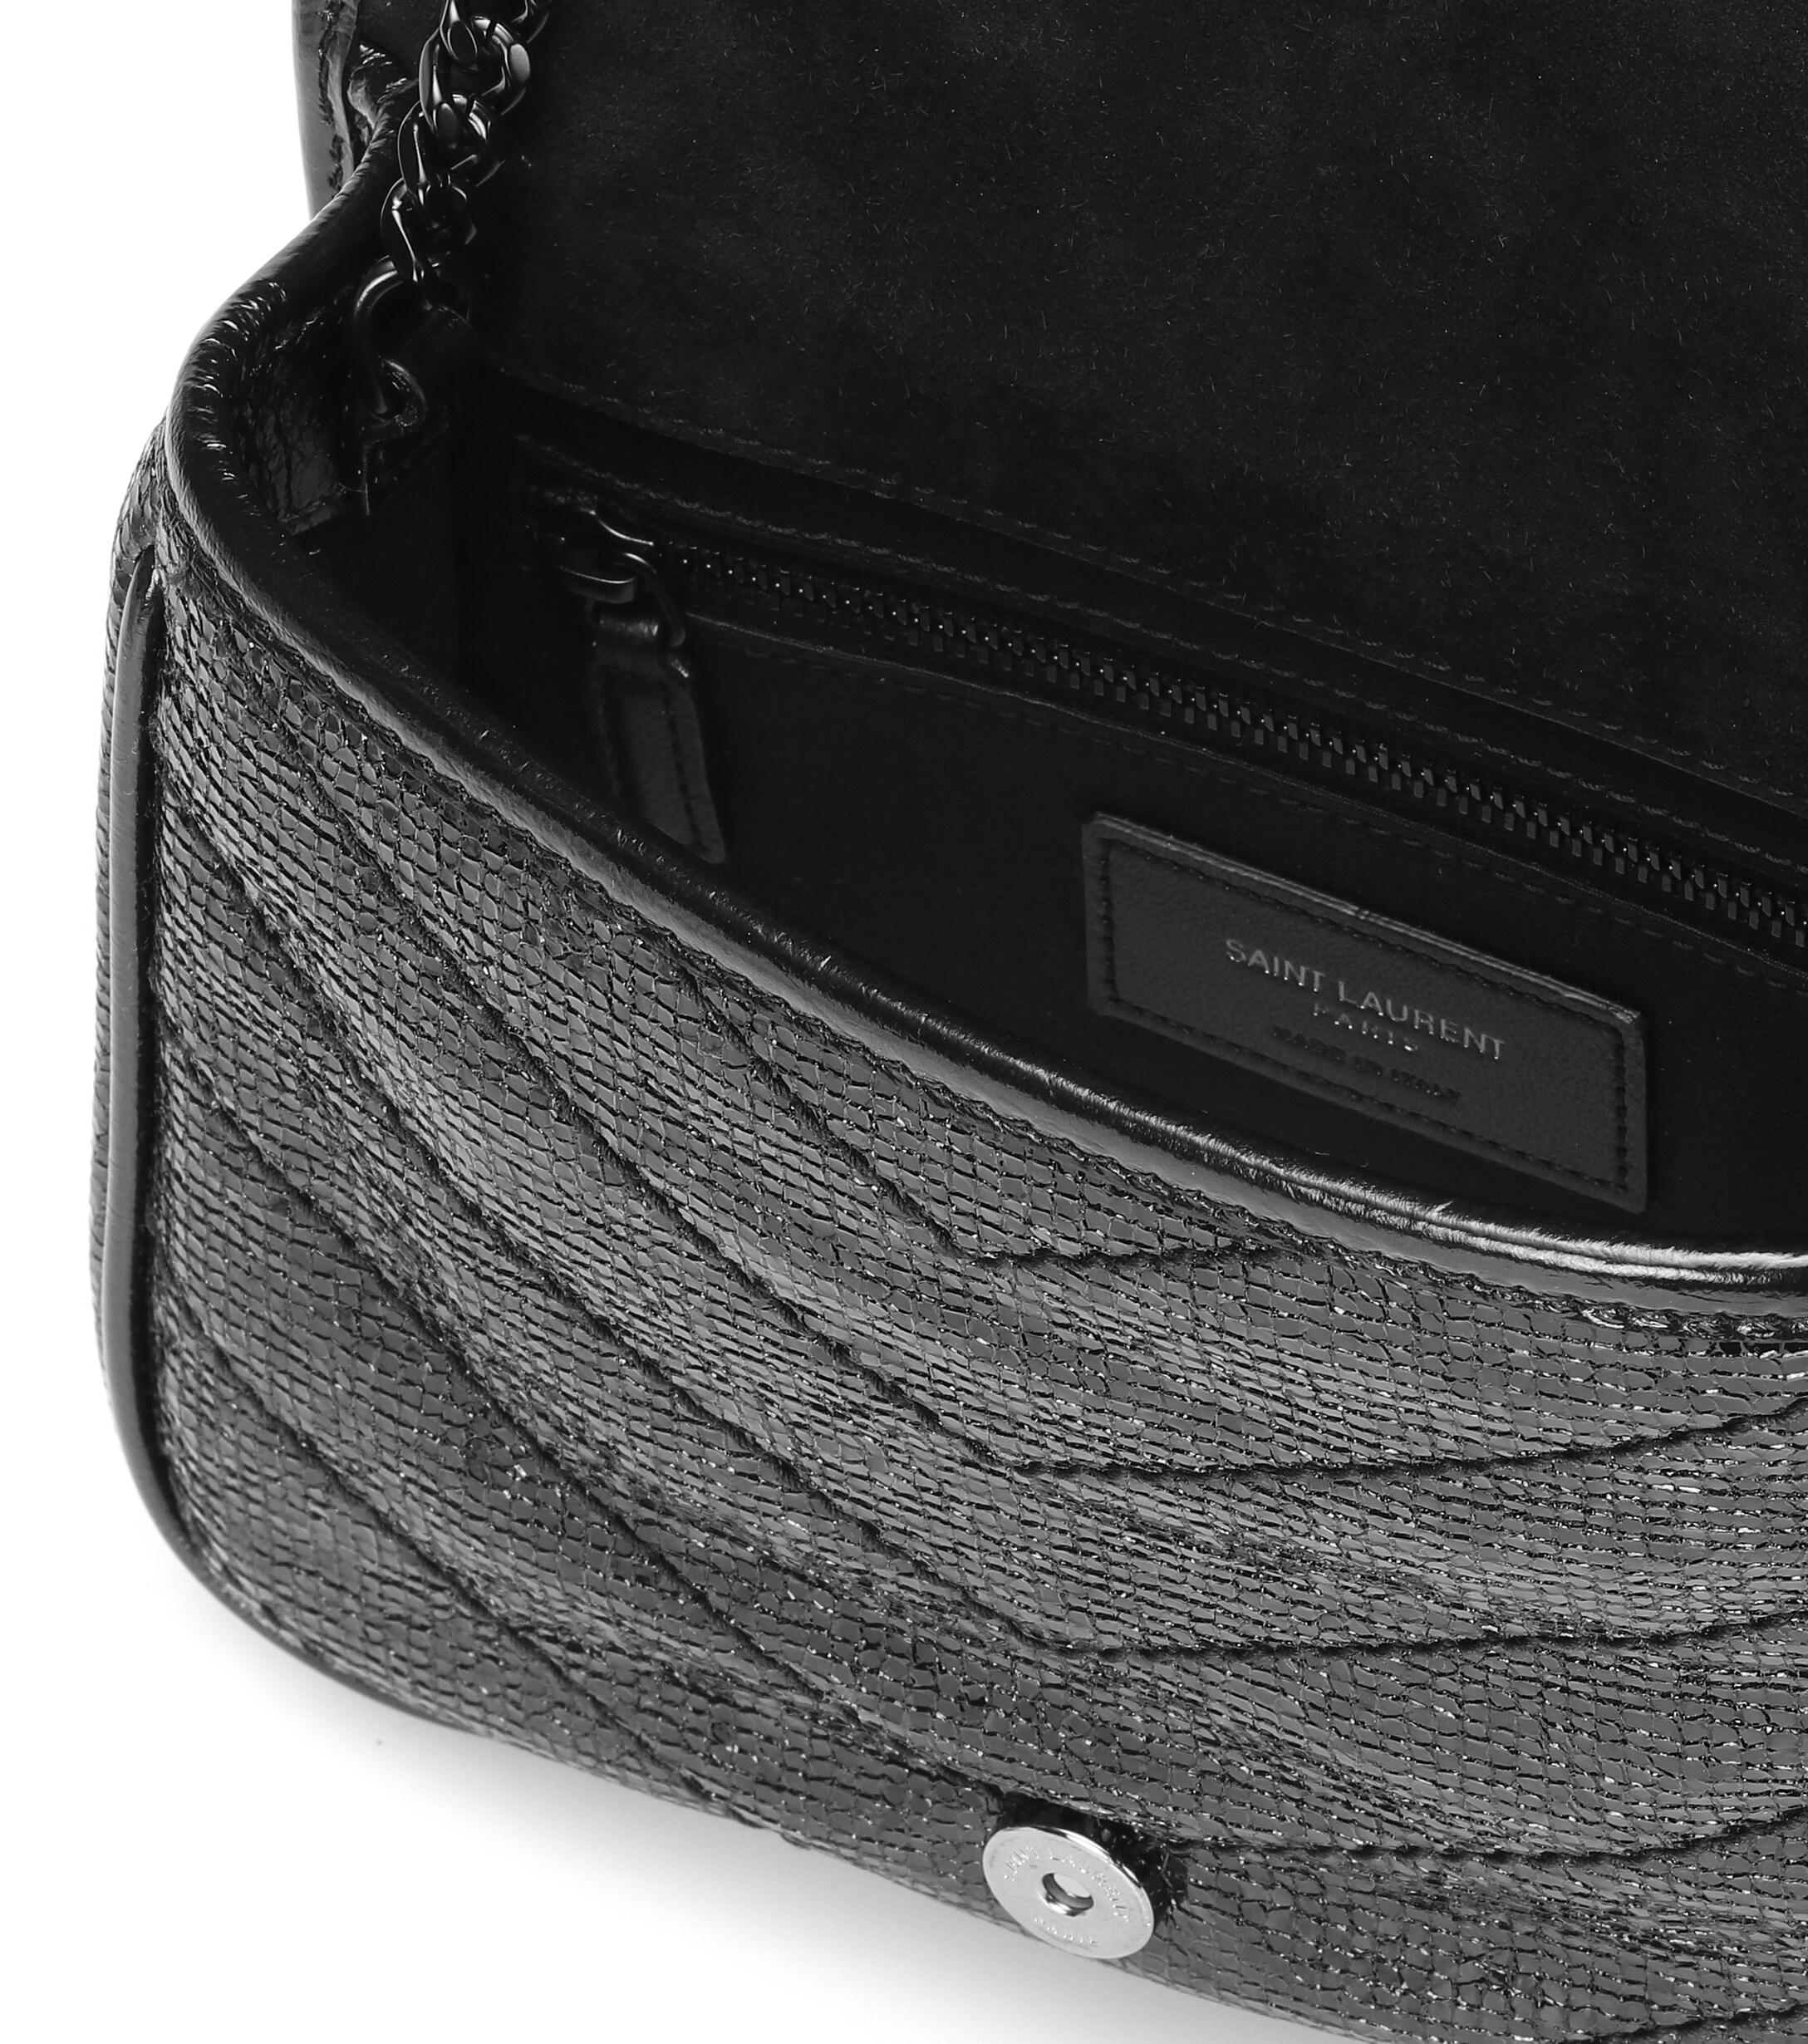 Mini niki leather handbag Saint Laurent Black in Leather - 12544825